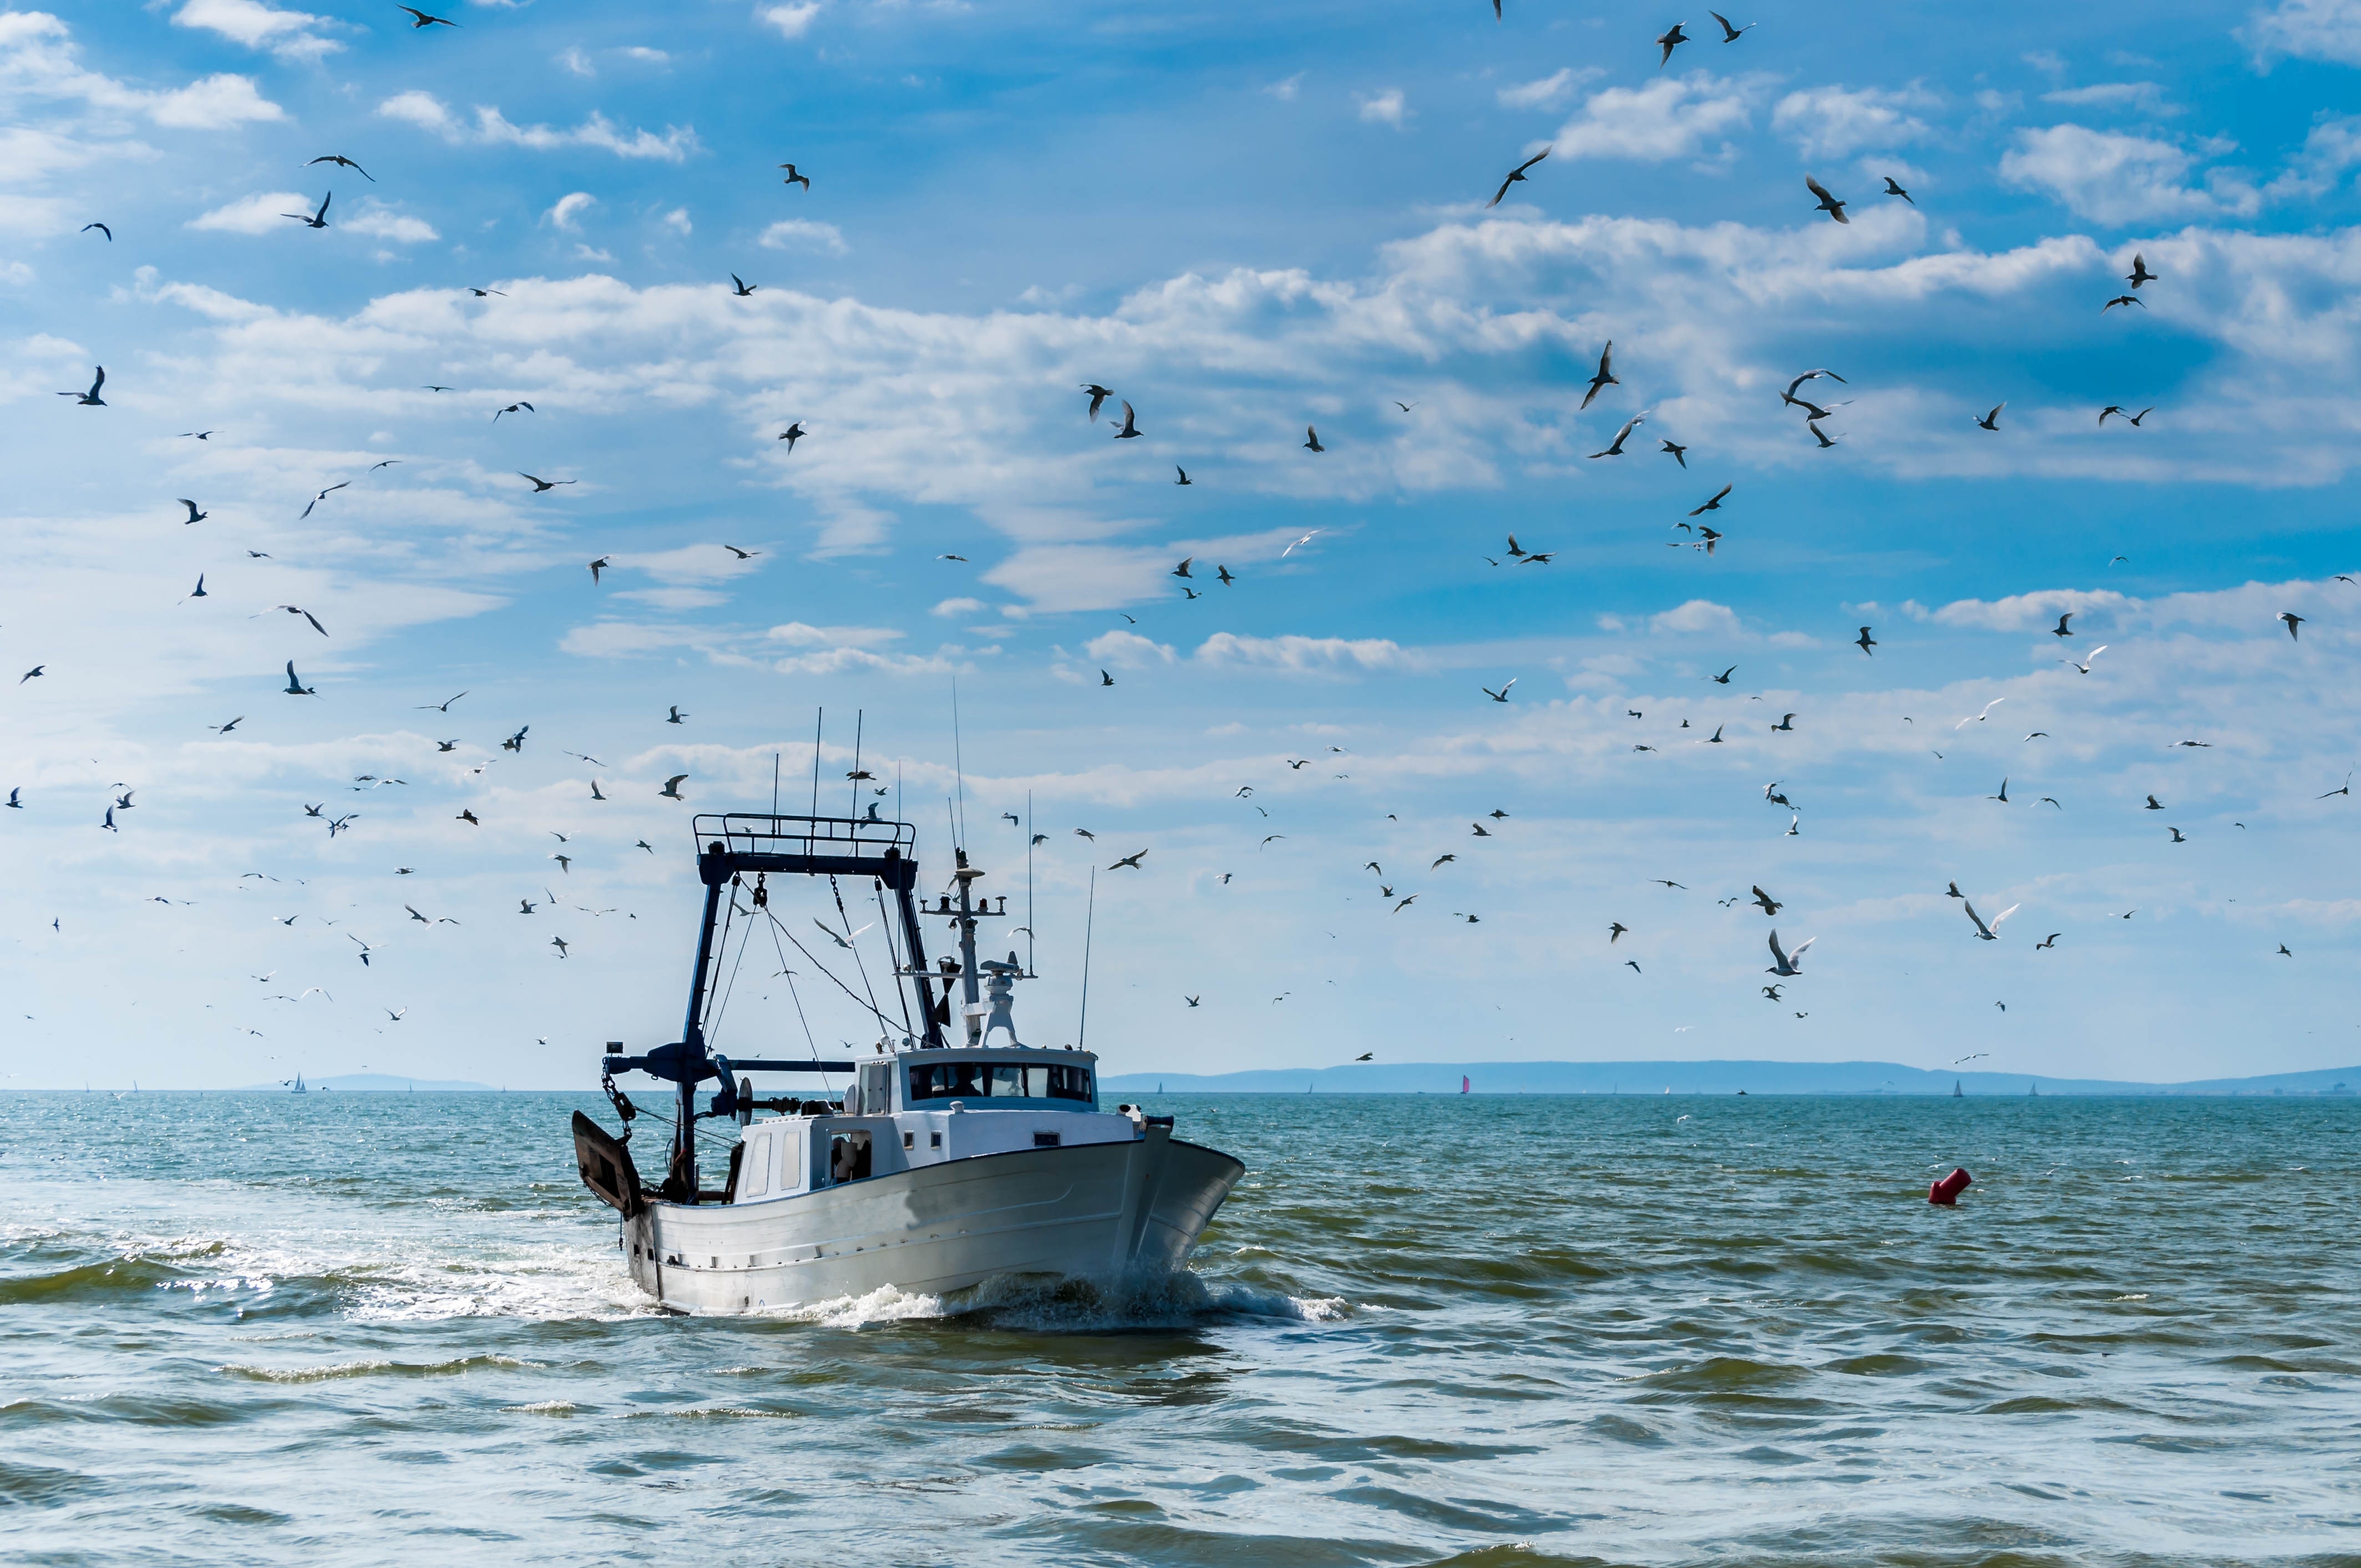 El MITECO destina 4,3 millones para apoyar la sostenibilidad del sector pesqueroEl MITECO destina 4,3 millones para apoyar la sostenibilidad del sector pesquero y acuícola y reforzar la protección de la Red Natura 2000 en el medio marino